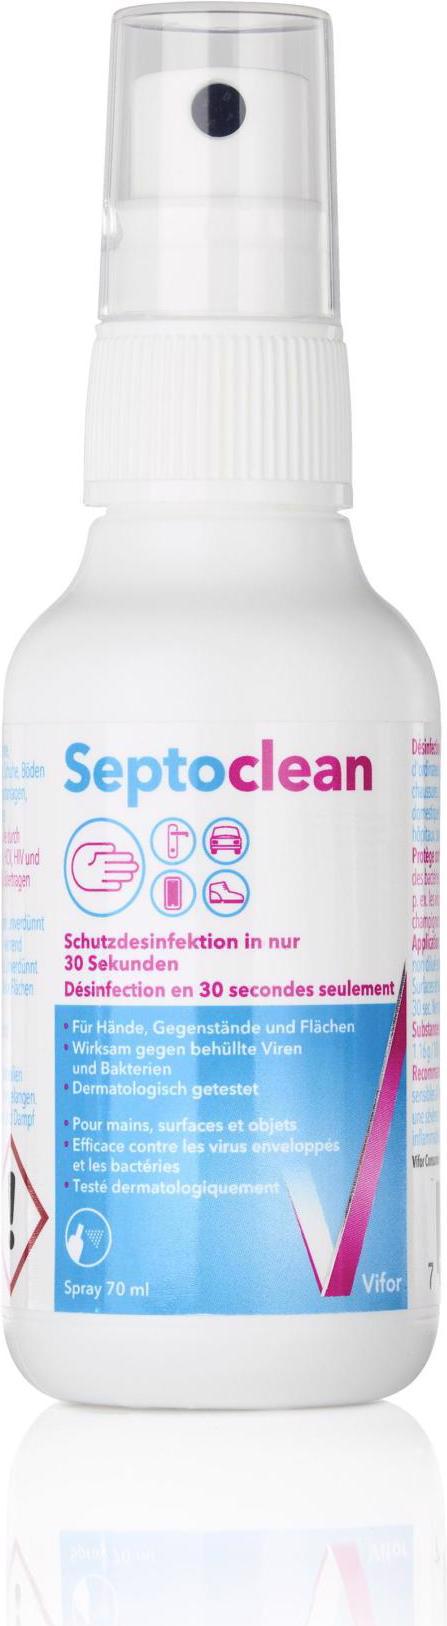 Septoclean Desinfektionsspray (70 ml) kaufen